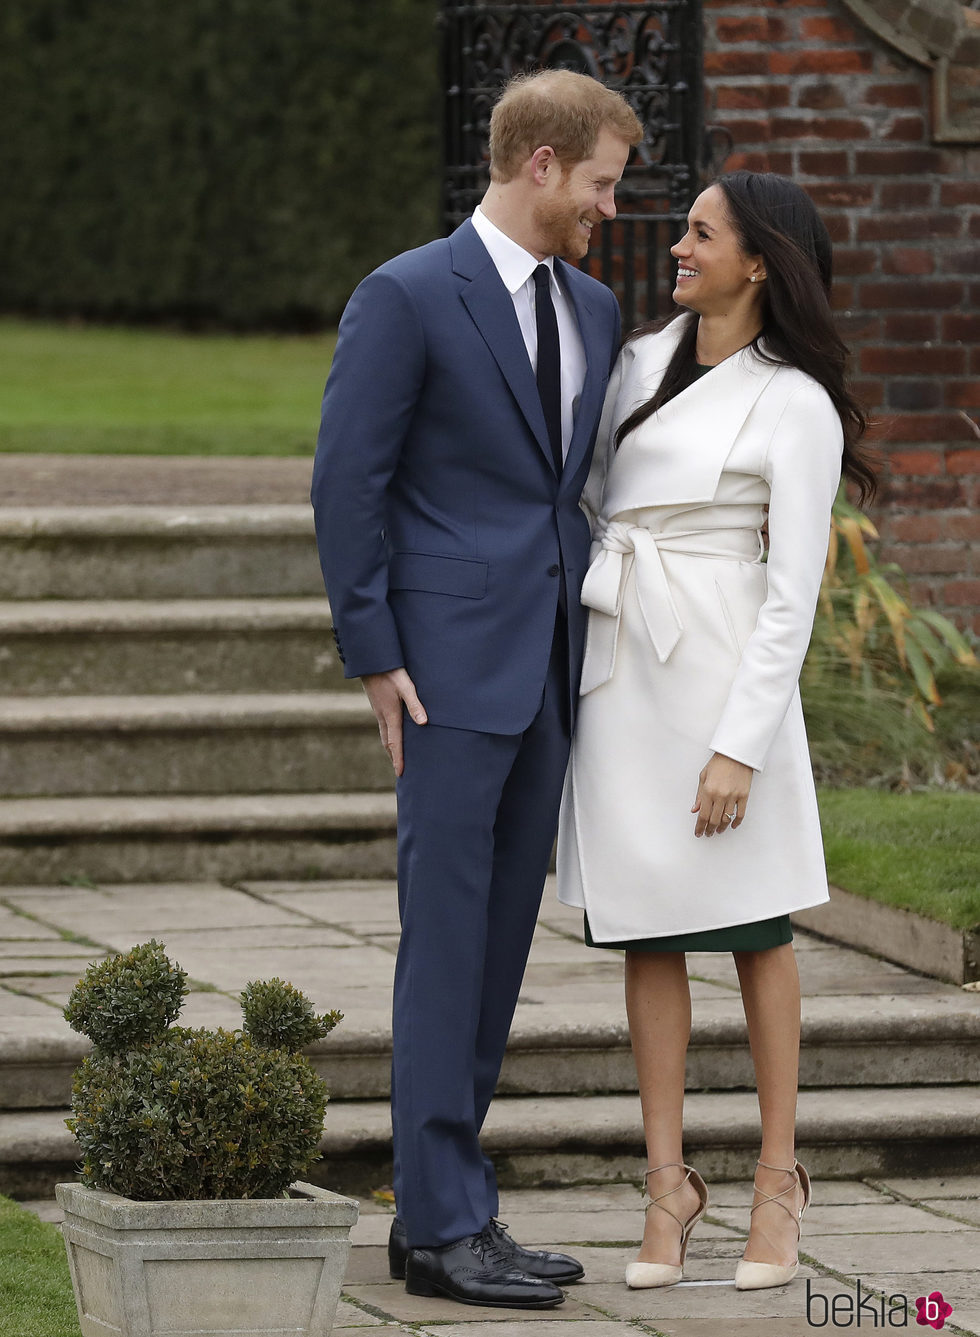 El Príncipe Harry y Meghan Markle se miran cariñosos en el posado oficial tras el anuncio de compromiso